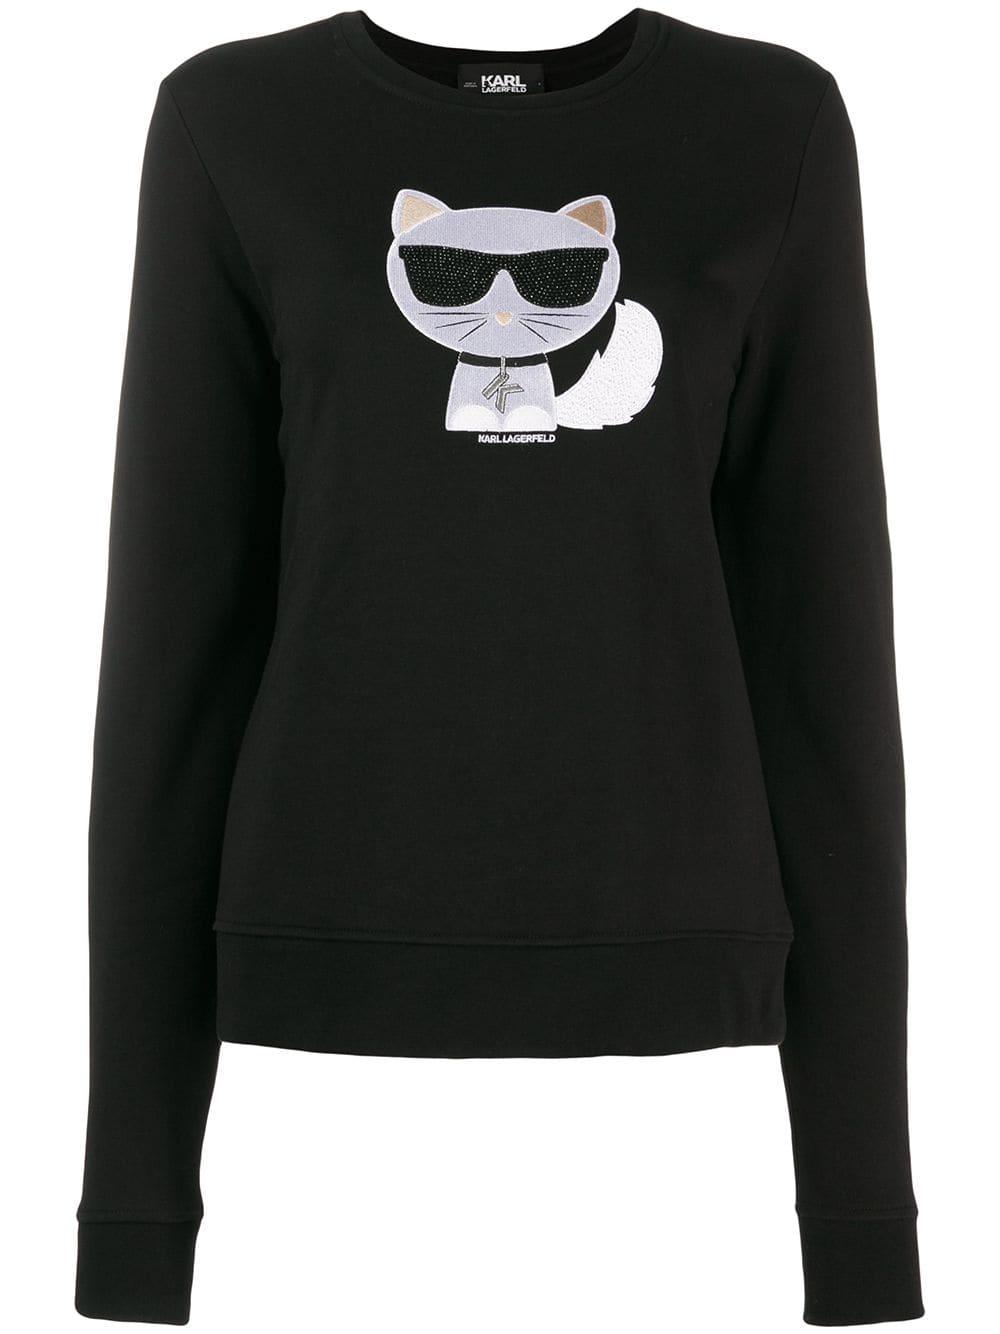 Karl Lagerfeld Ikonik Choupette Sweater in Black - Lyst